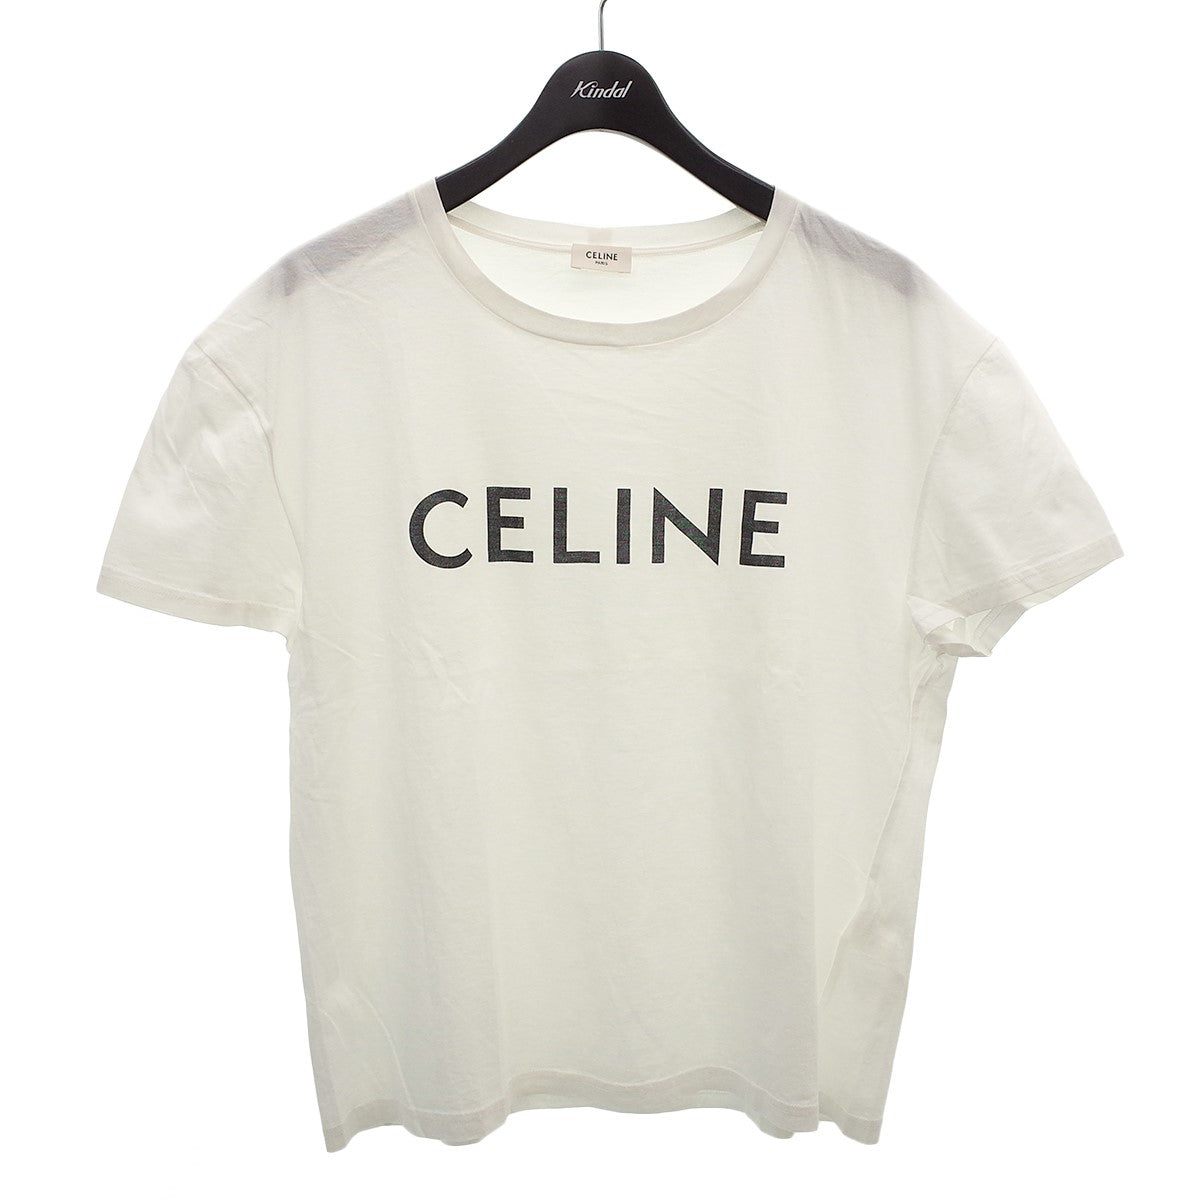 CELINE(セリーヌ) 【X008370E】半袖Tシャツ ホワイト サイズ 12 